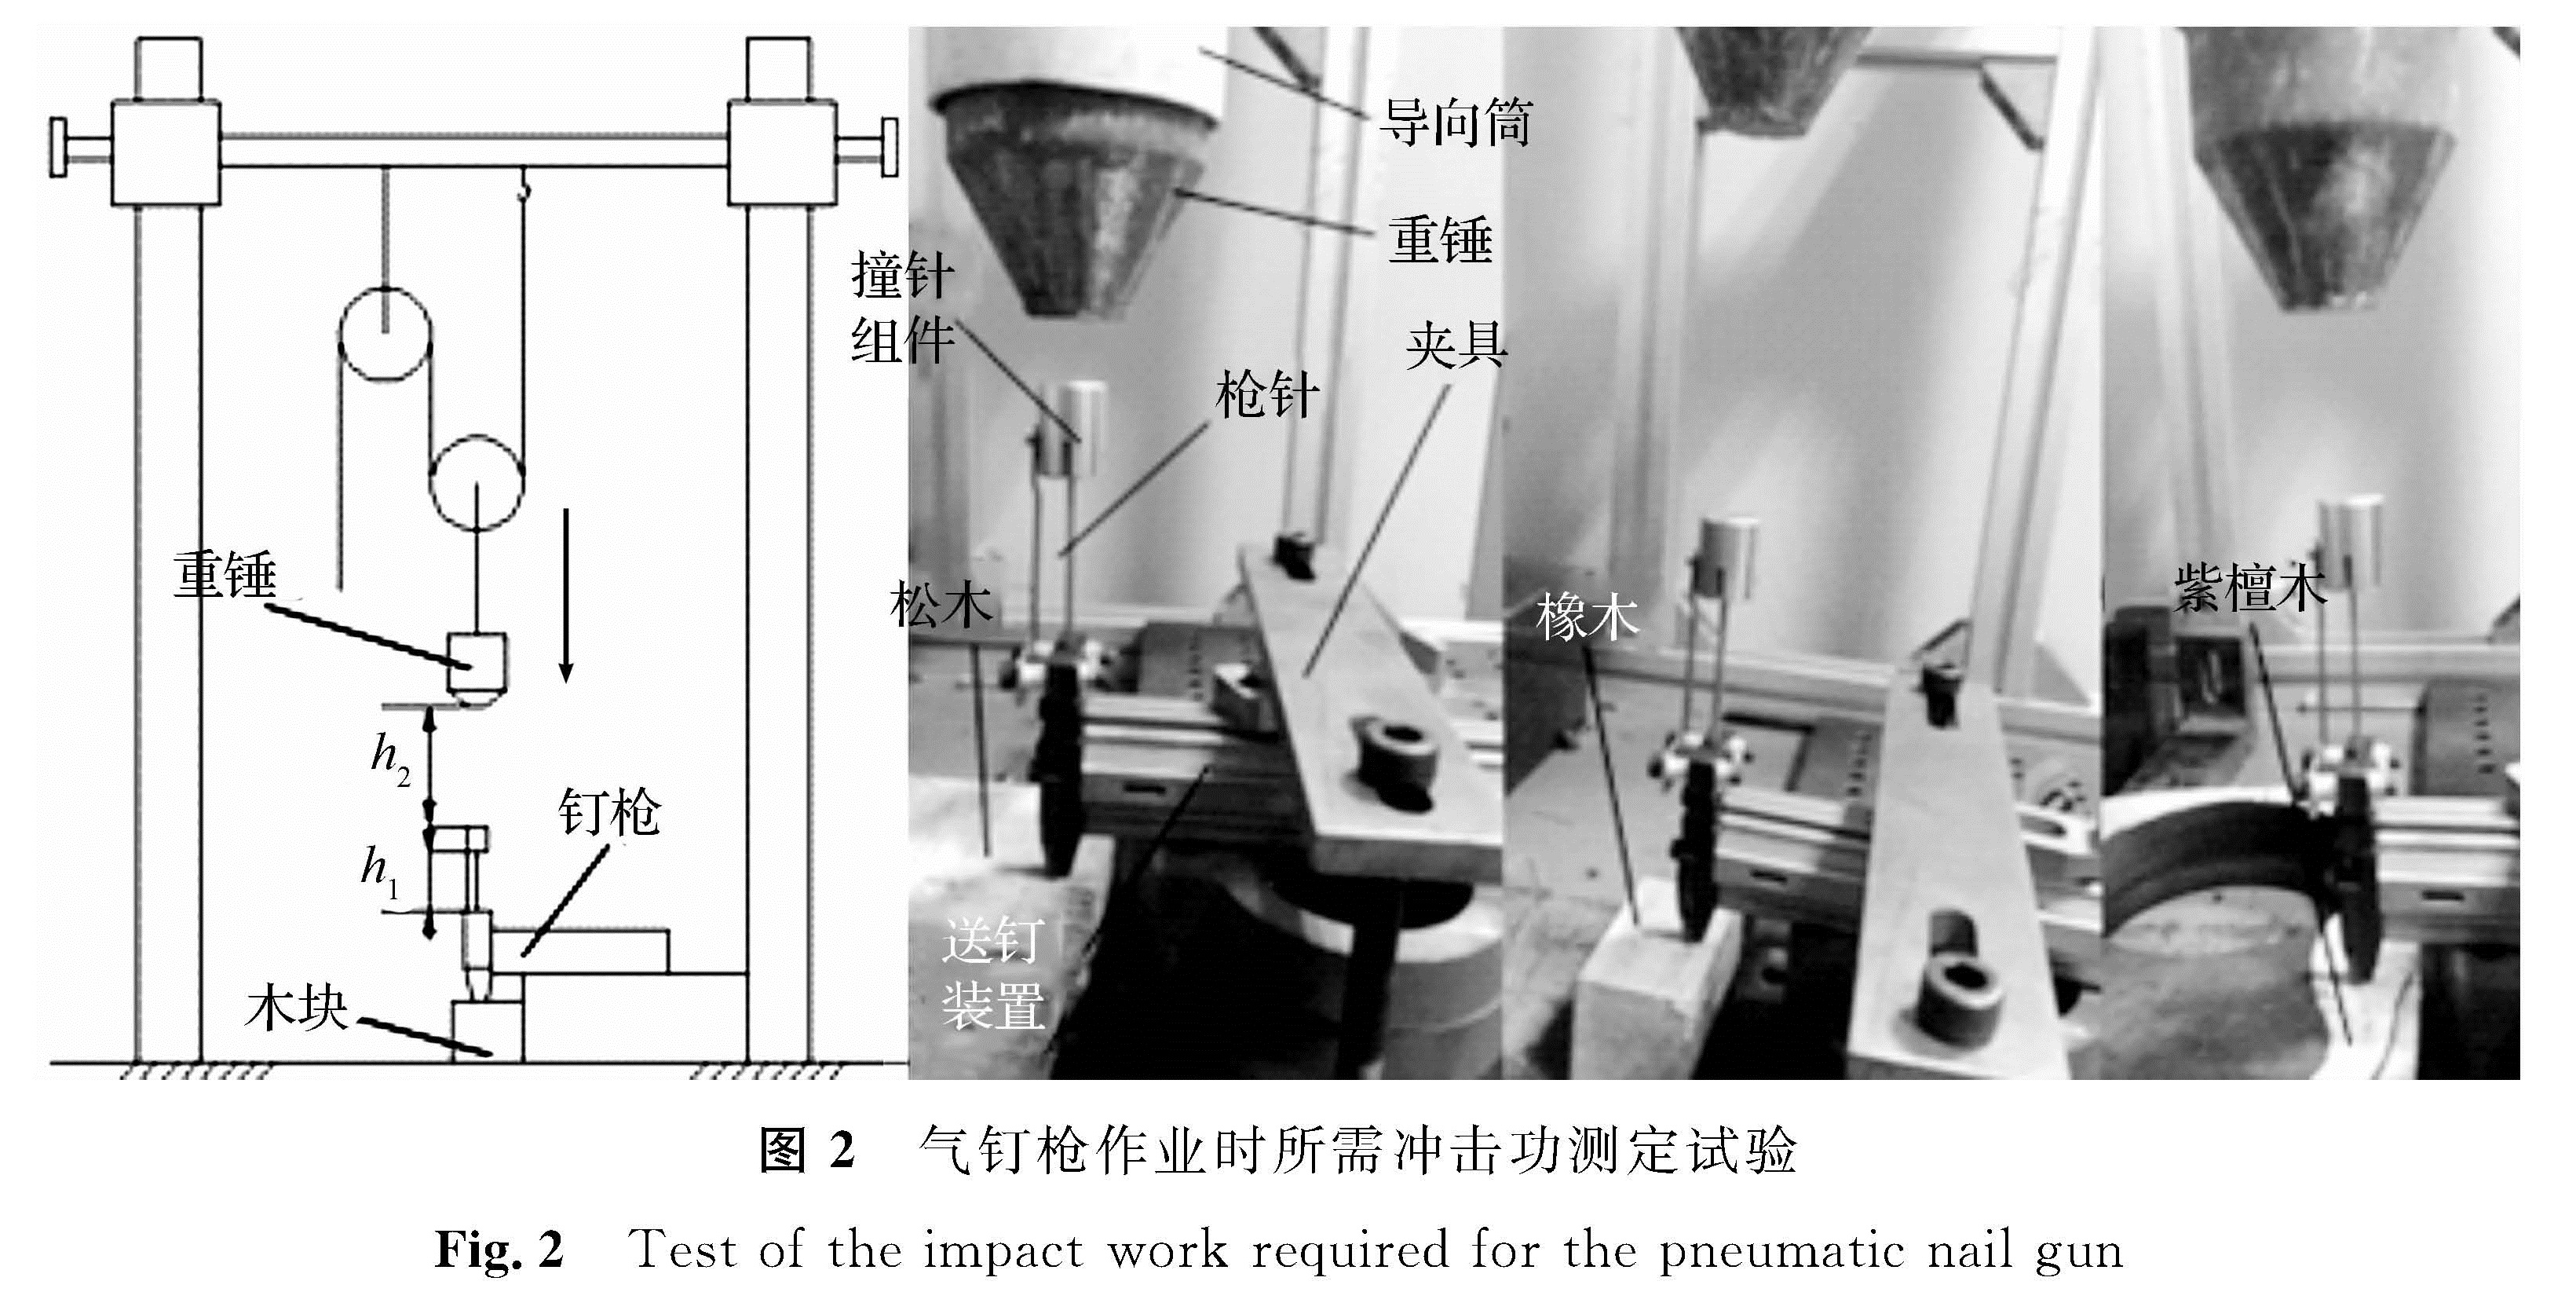 图2 气钉枪作业时所需冲击功测定试验<br/>Fig.2 Test of the impact work required for the pneumatic nail gun